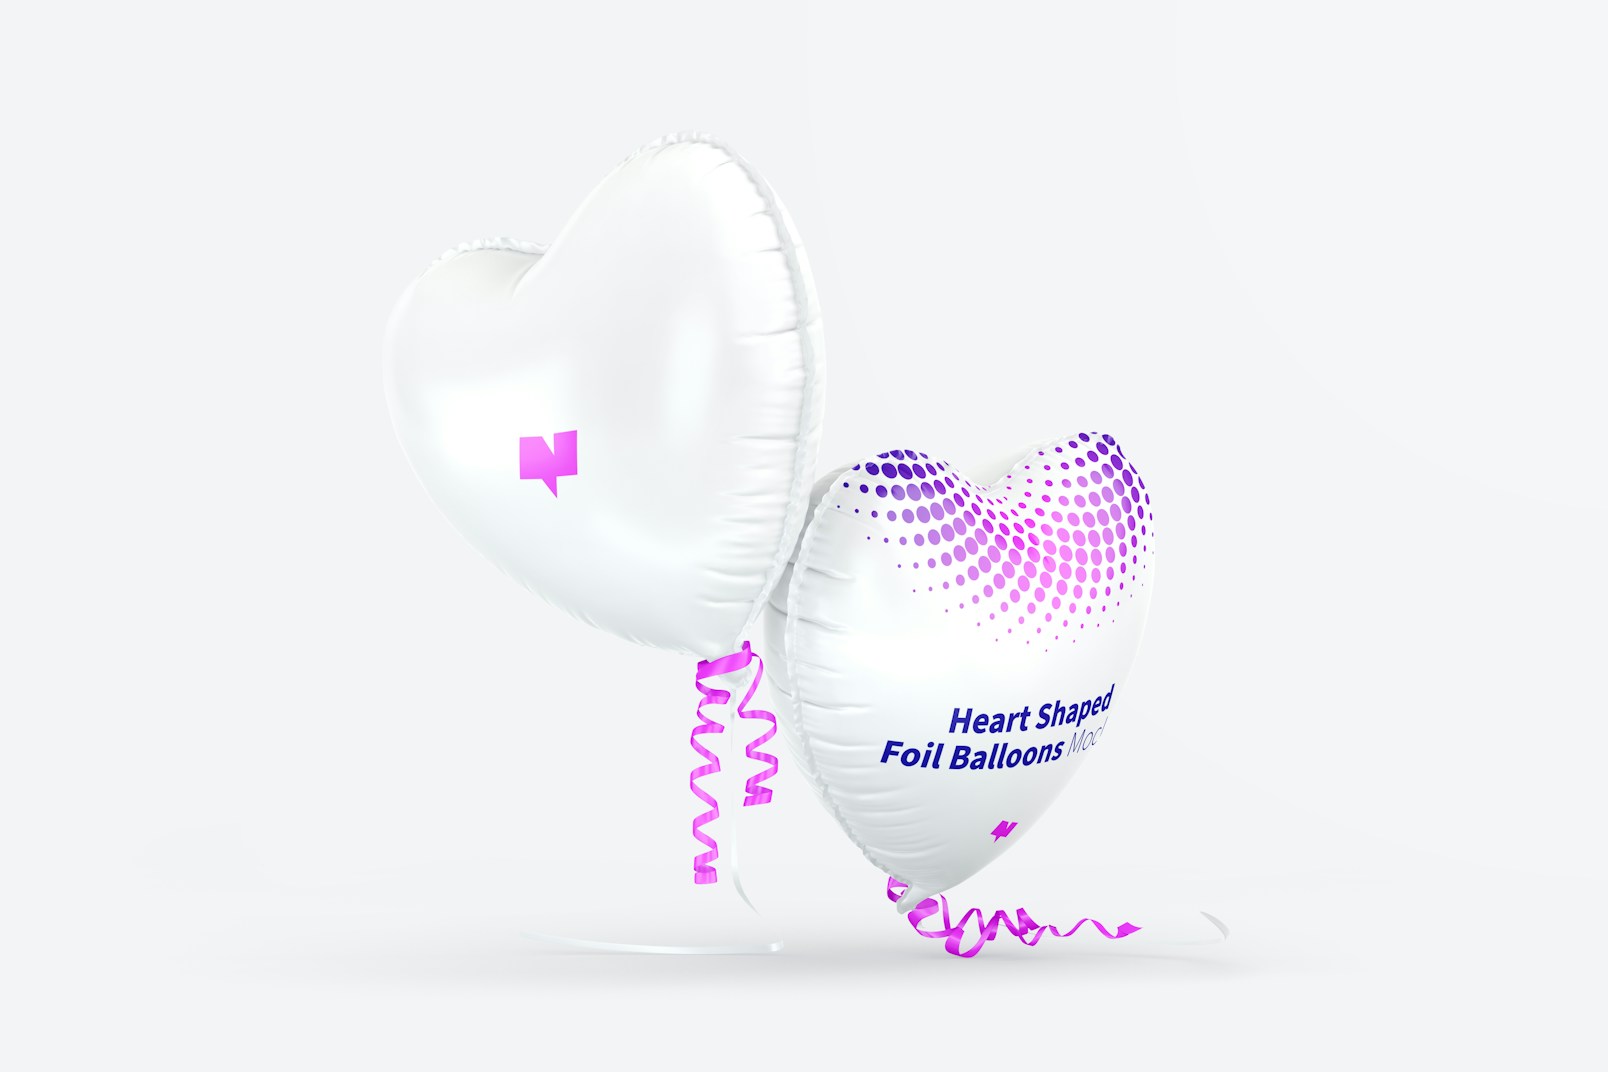 Heart Shaped Foil Balloons Mockup, Falling